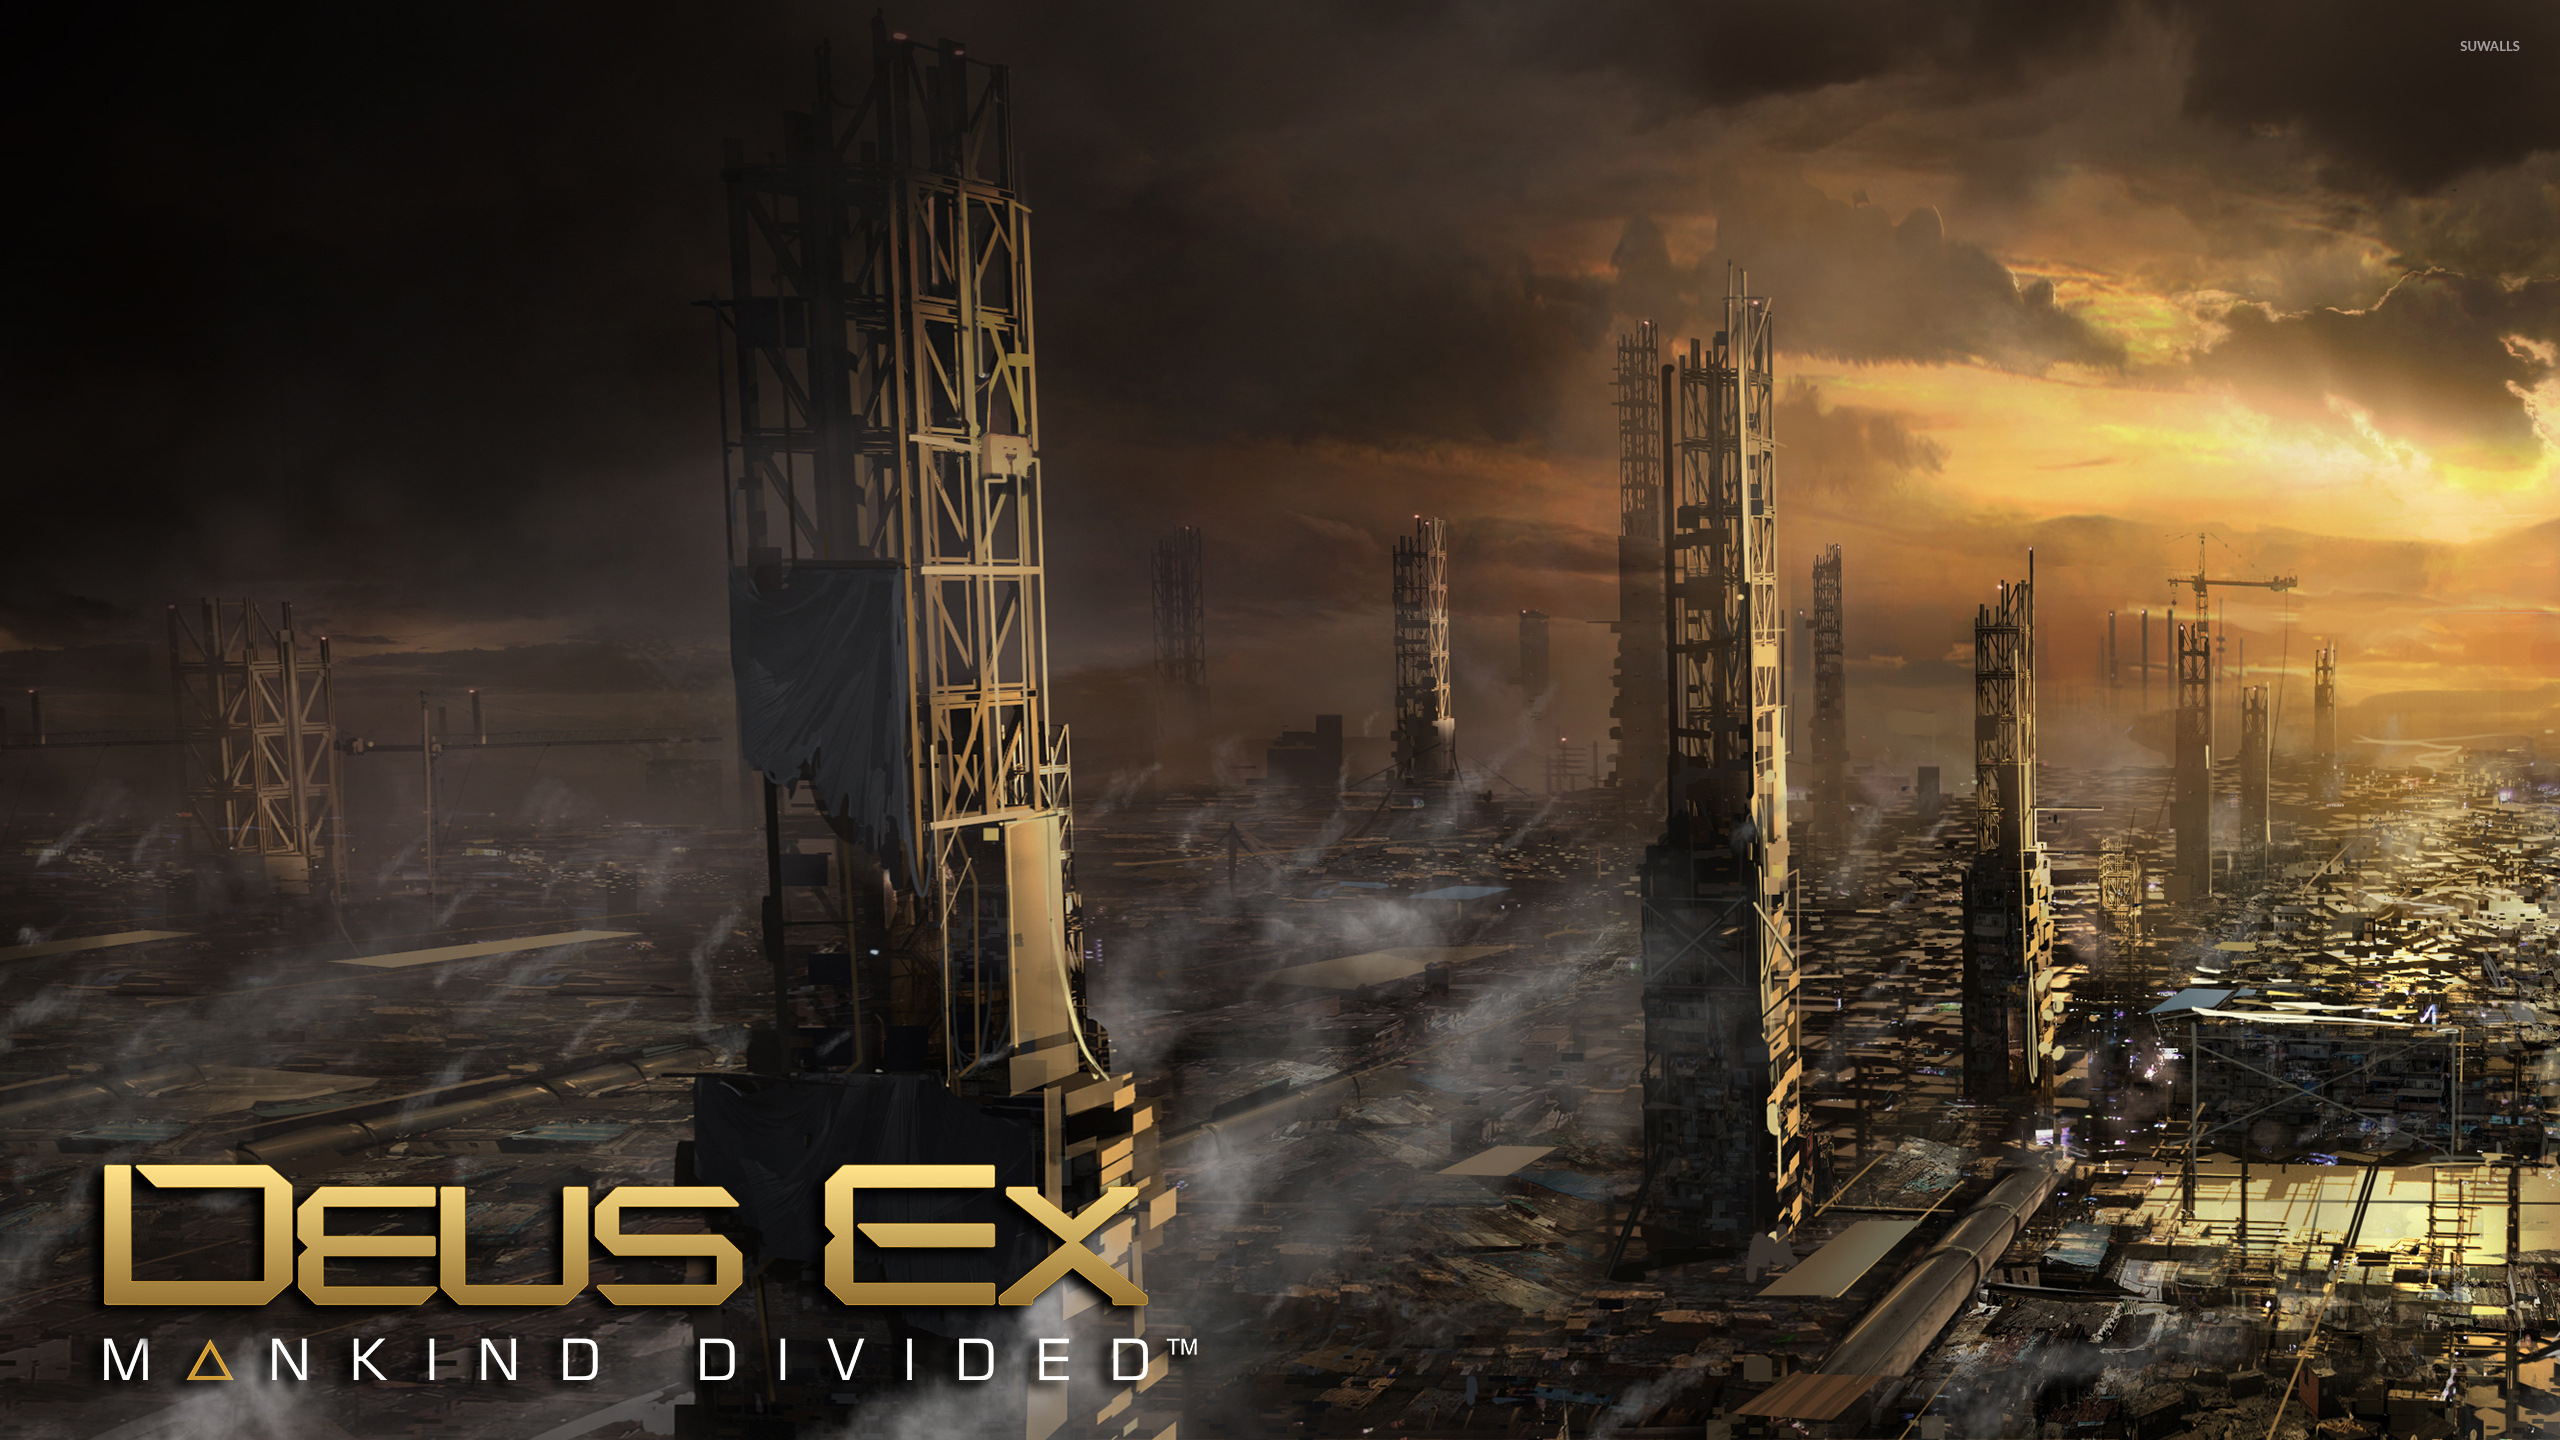 Golden sunset in Deus Ex: Mankind Divided wallpaper